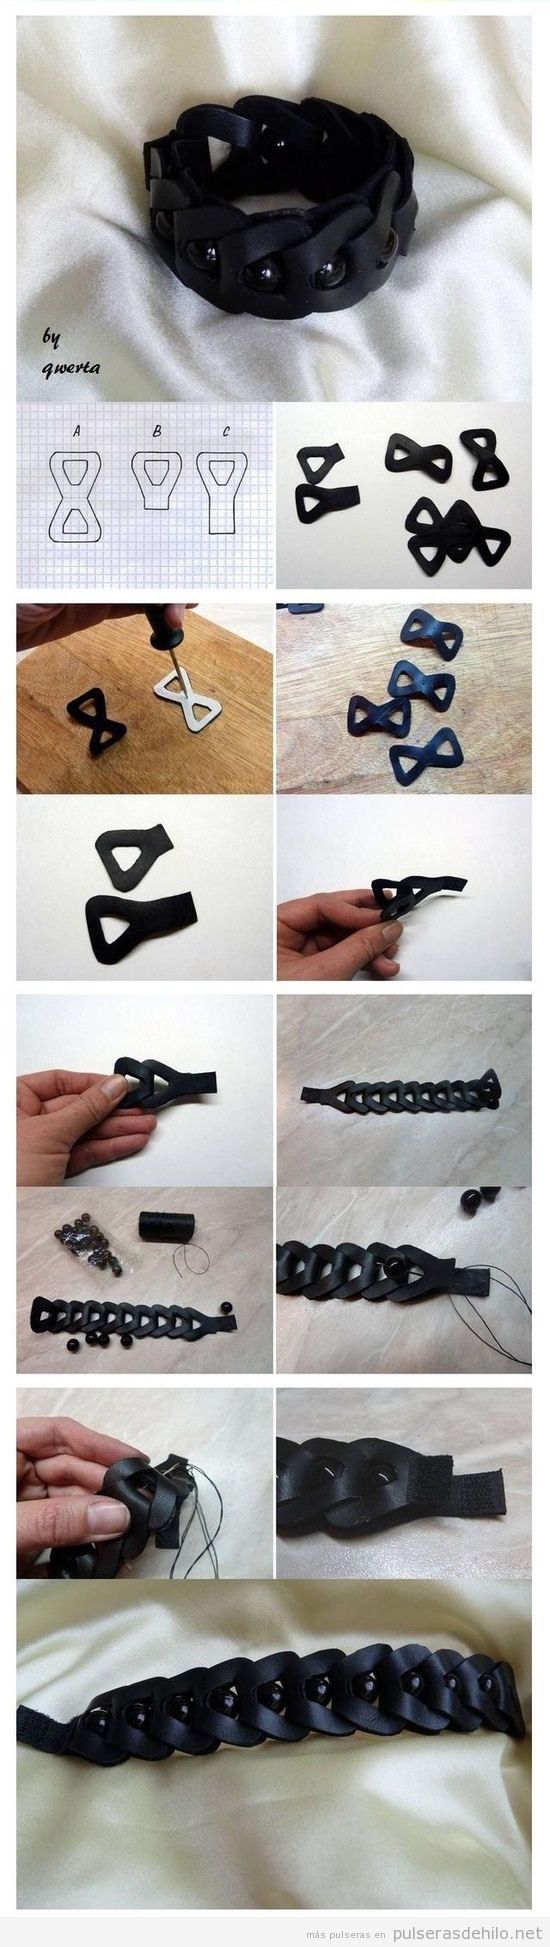 Tutorial para aprender a hacer una pulsera con trocitos de plástico